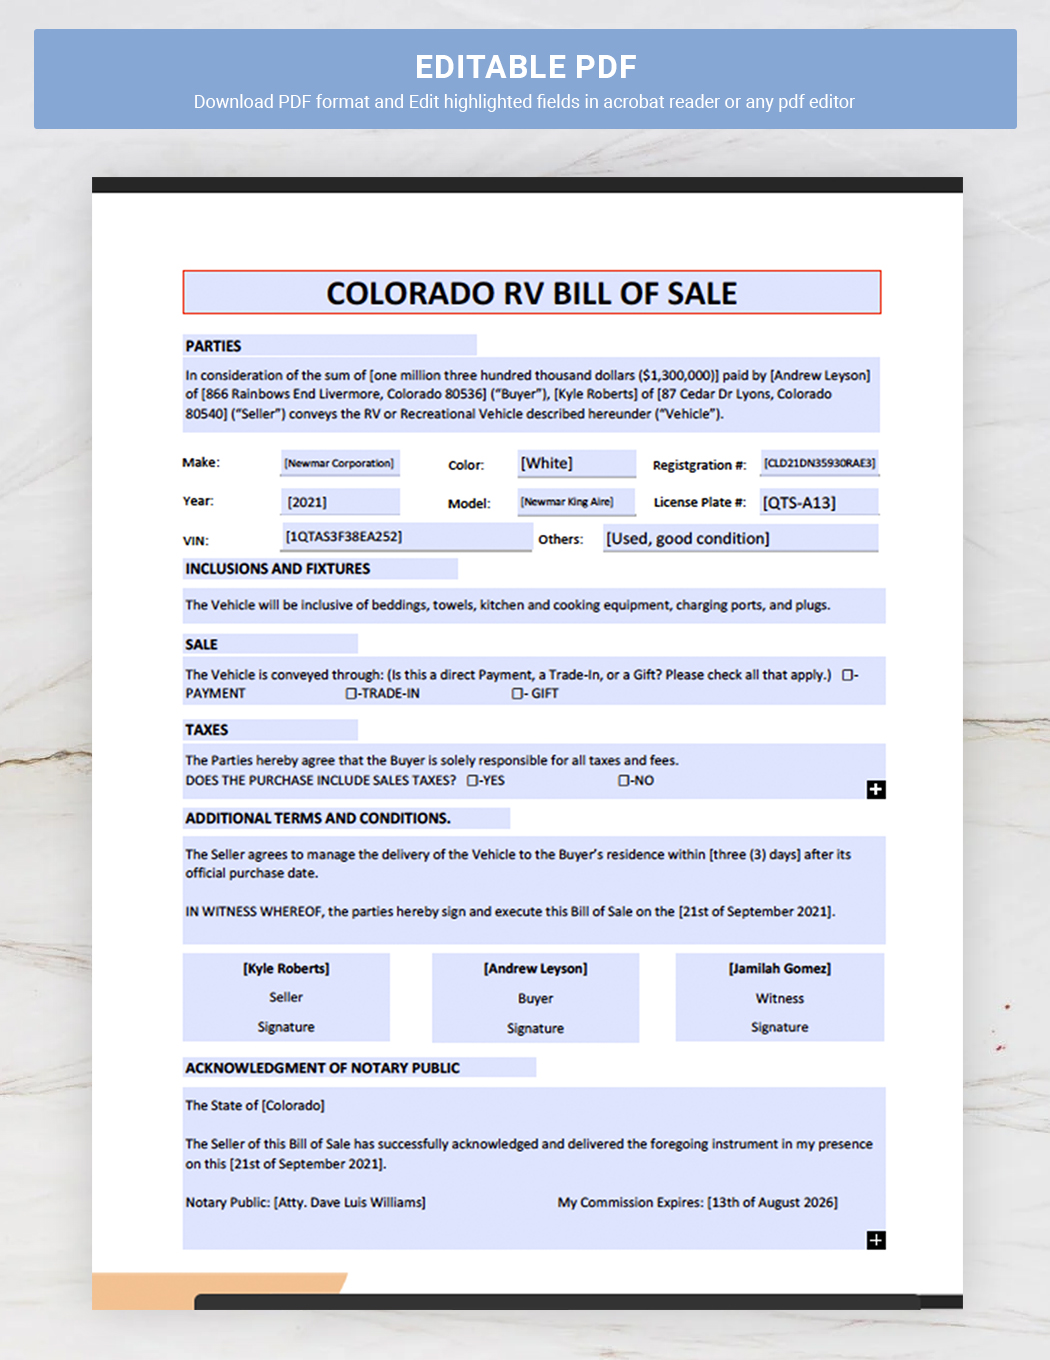 Colorado RV Bill of Sale Template